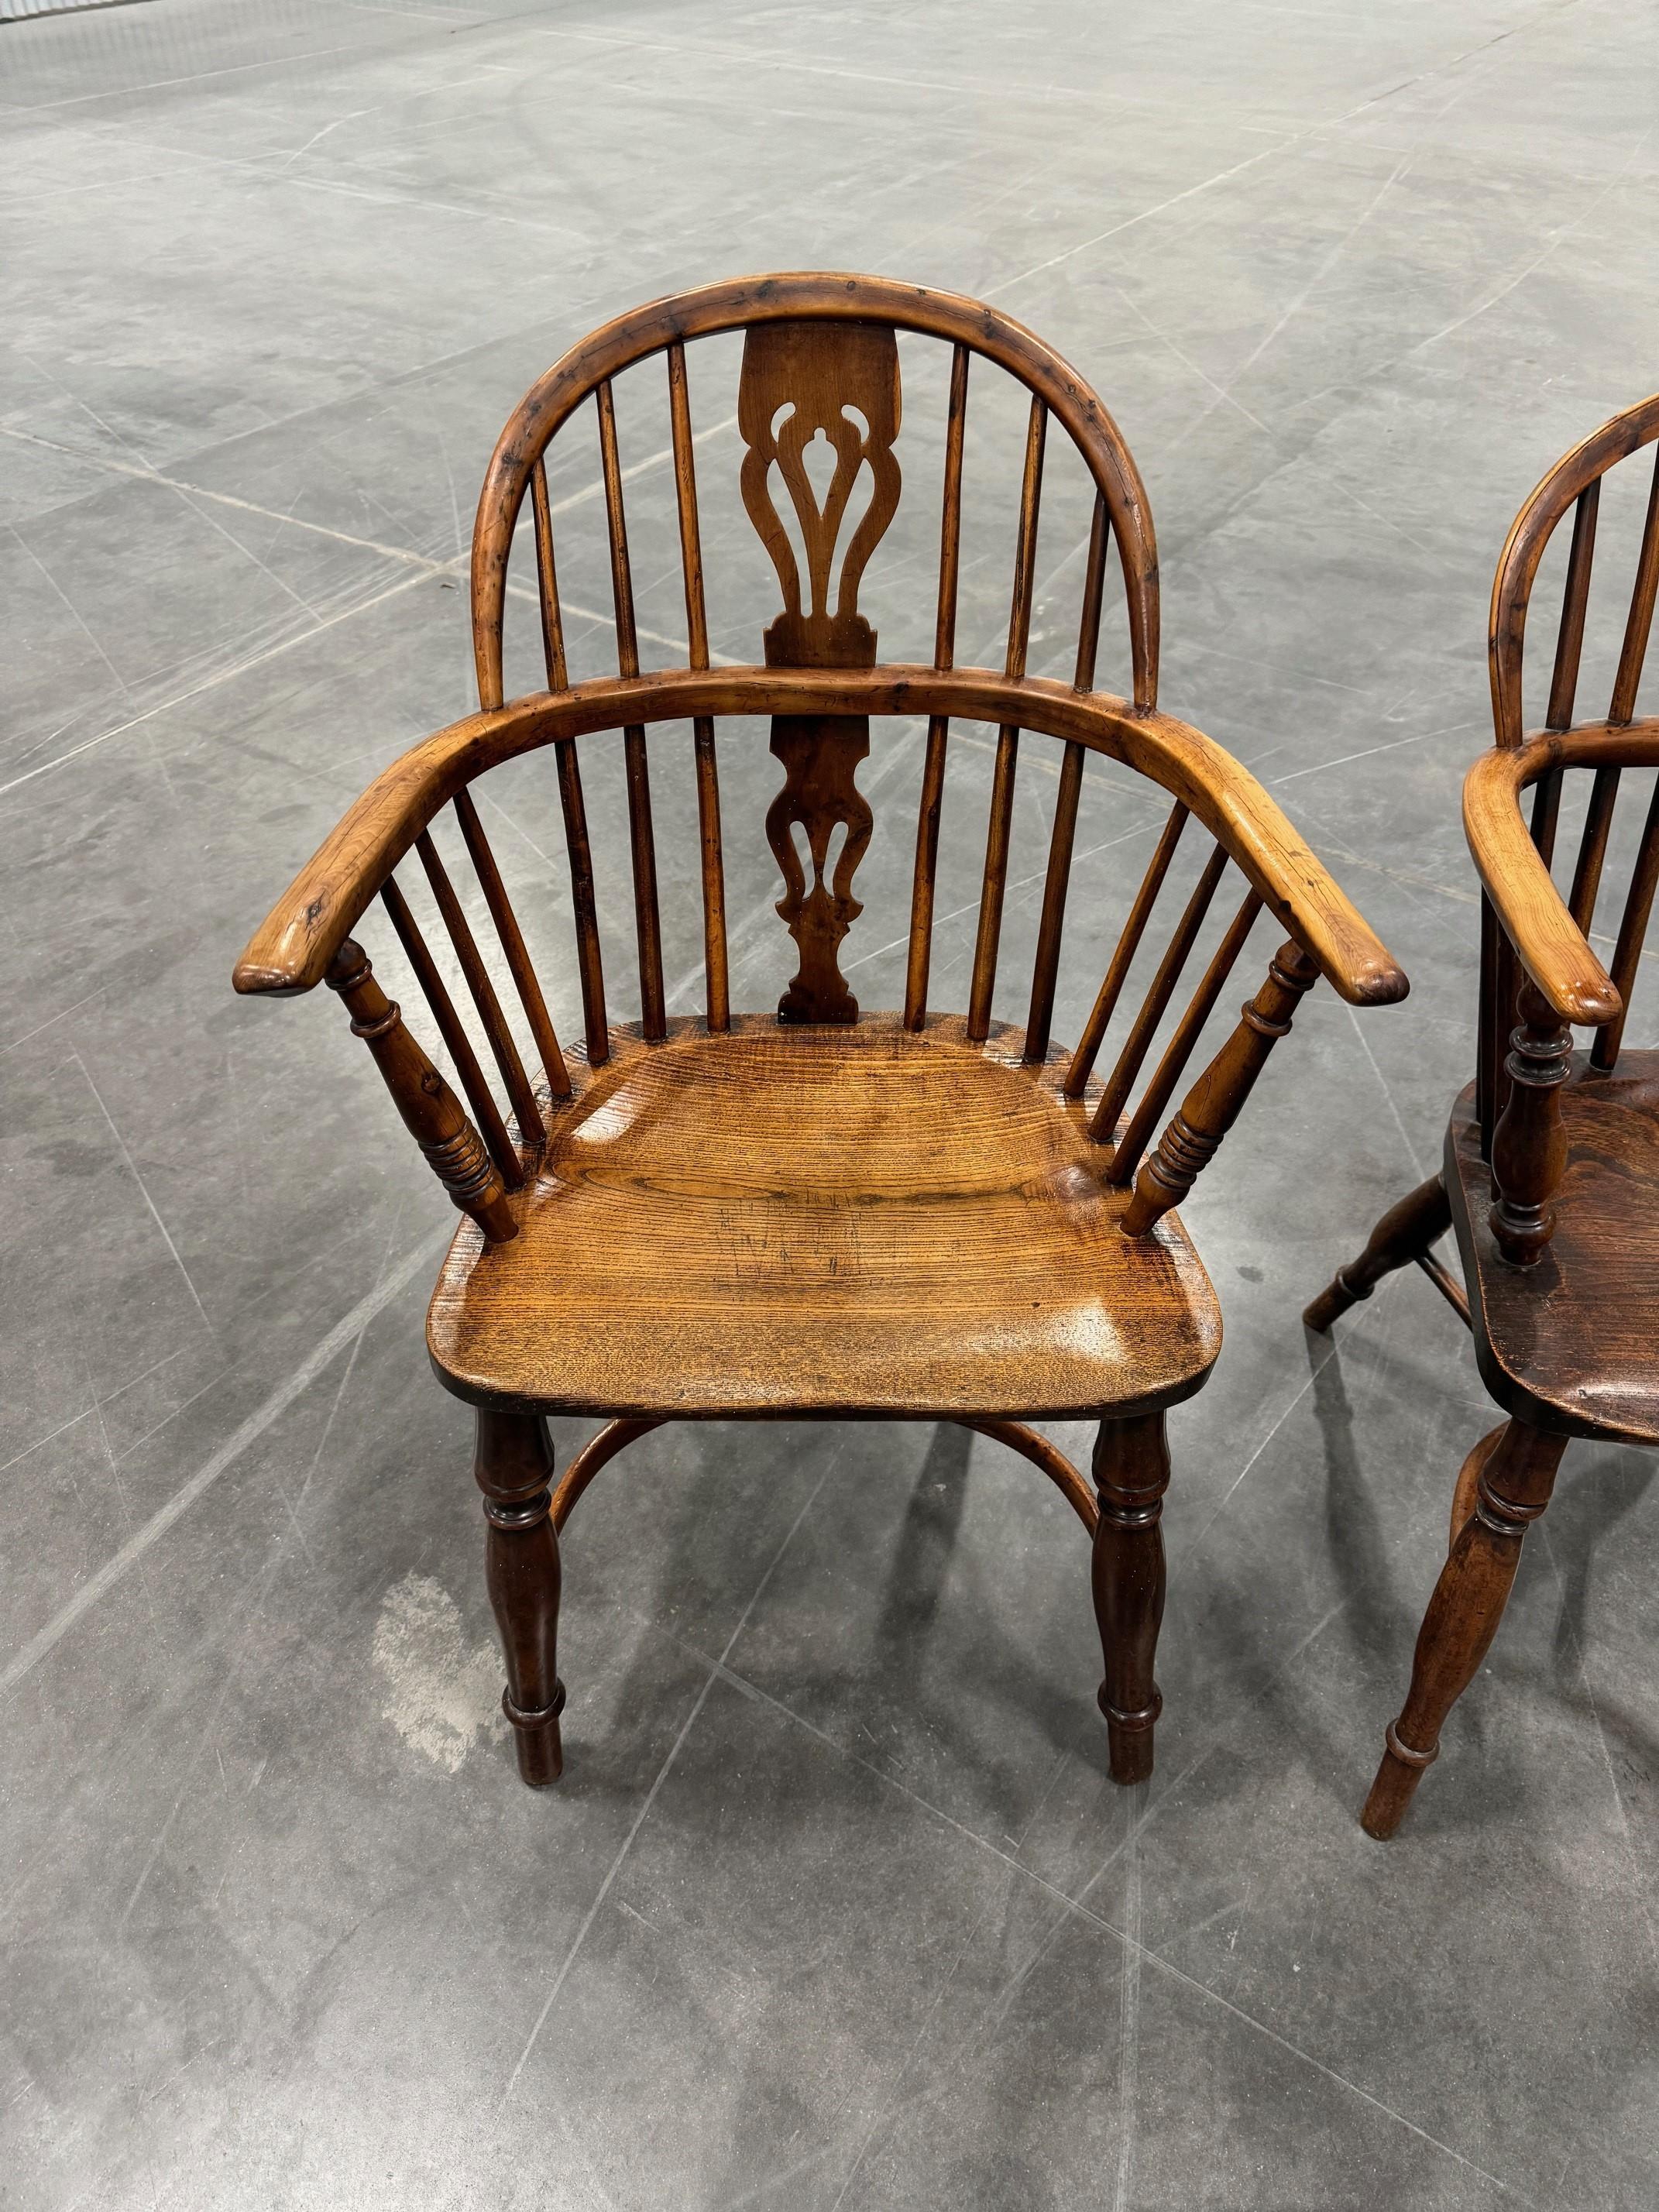 Magnifique paire assortie de meubles à dossier bas en bois d'if et d'orme du début de l'époque victorienne.  Chaises Windsor.
Les supports d'accoudoirs sont tournés, le dossier est à ressaut et le bord de l'assise est orné d'un contour sculpté. Les